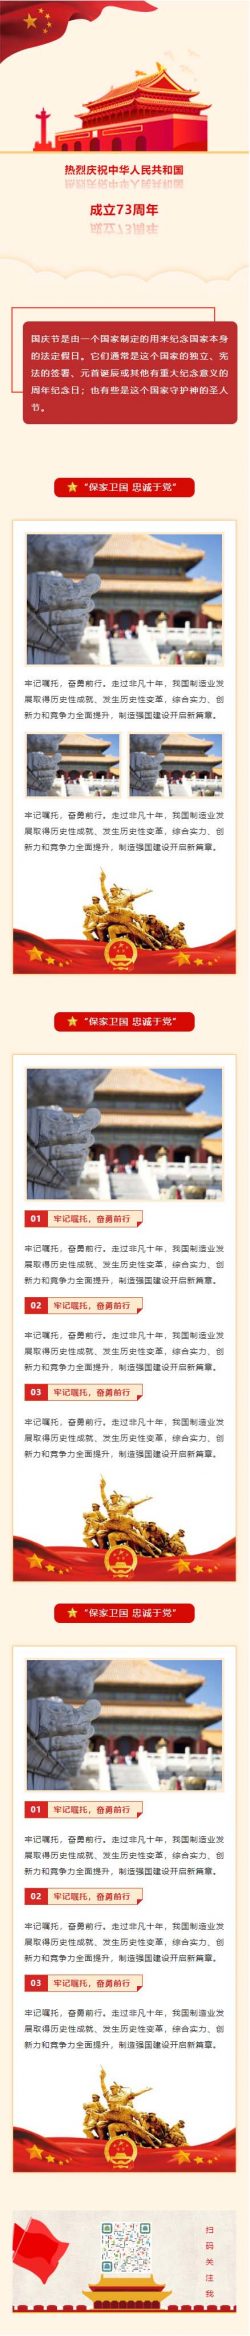 热烈庆祝中华人民共和国成立73周年国庆节微信推文模板